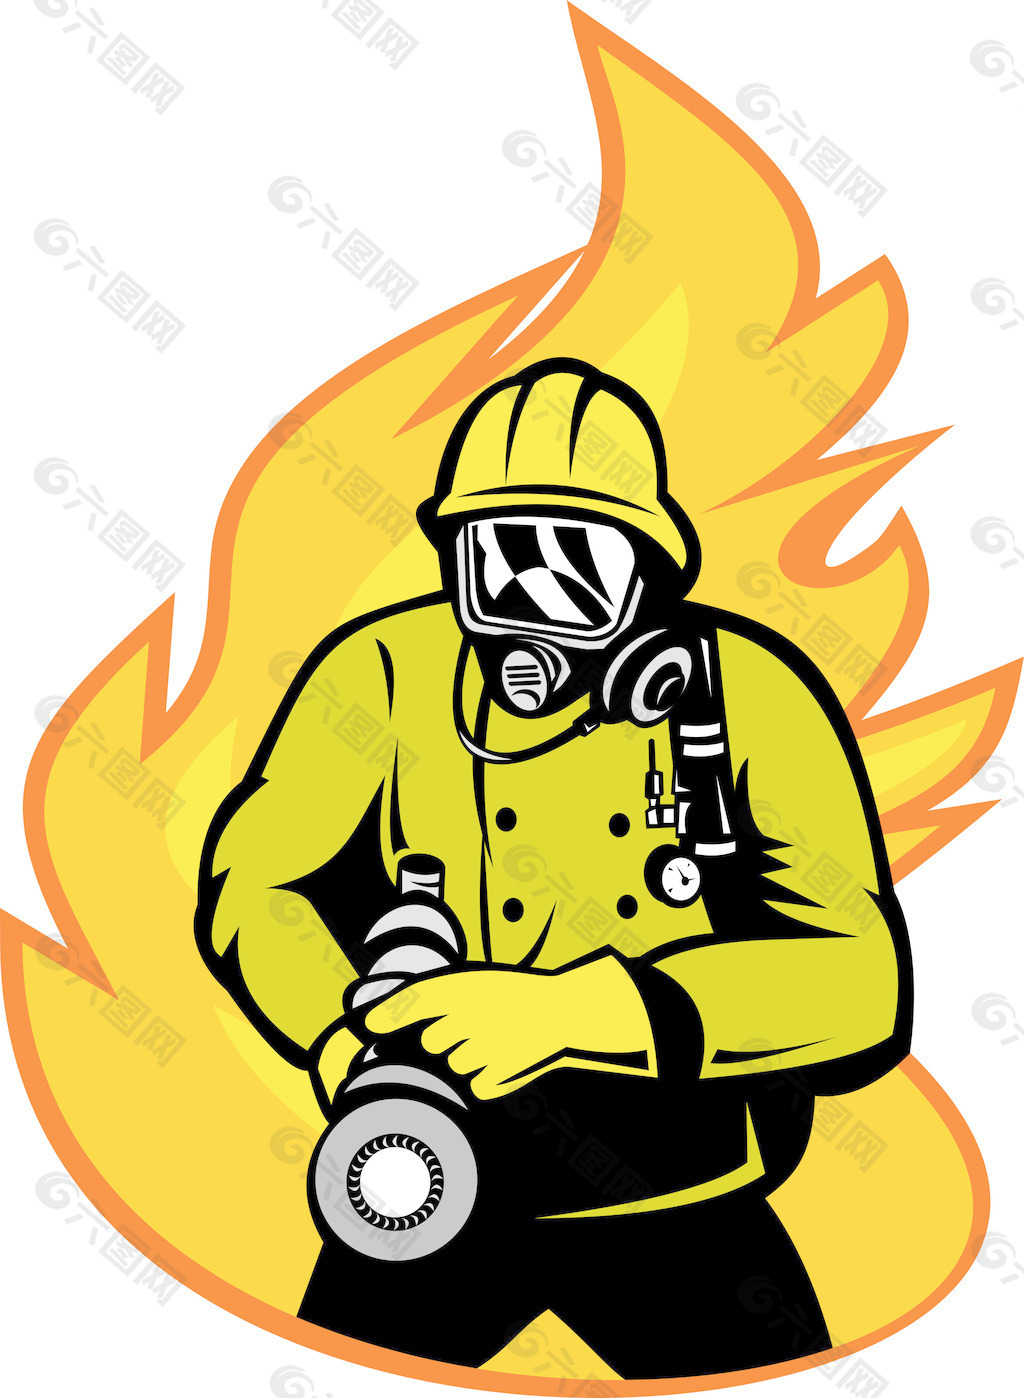 消防队员或消防队员用灭火水龙带